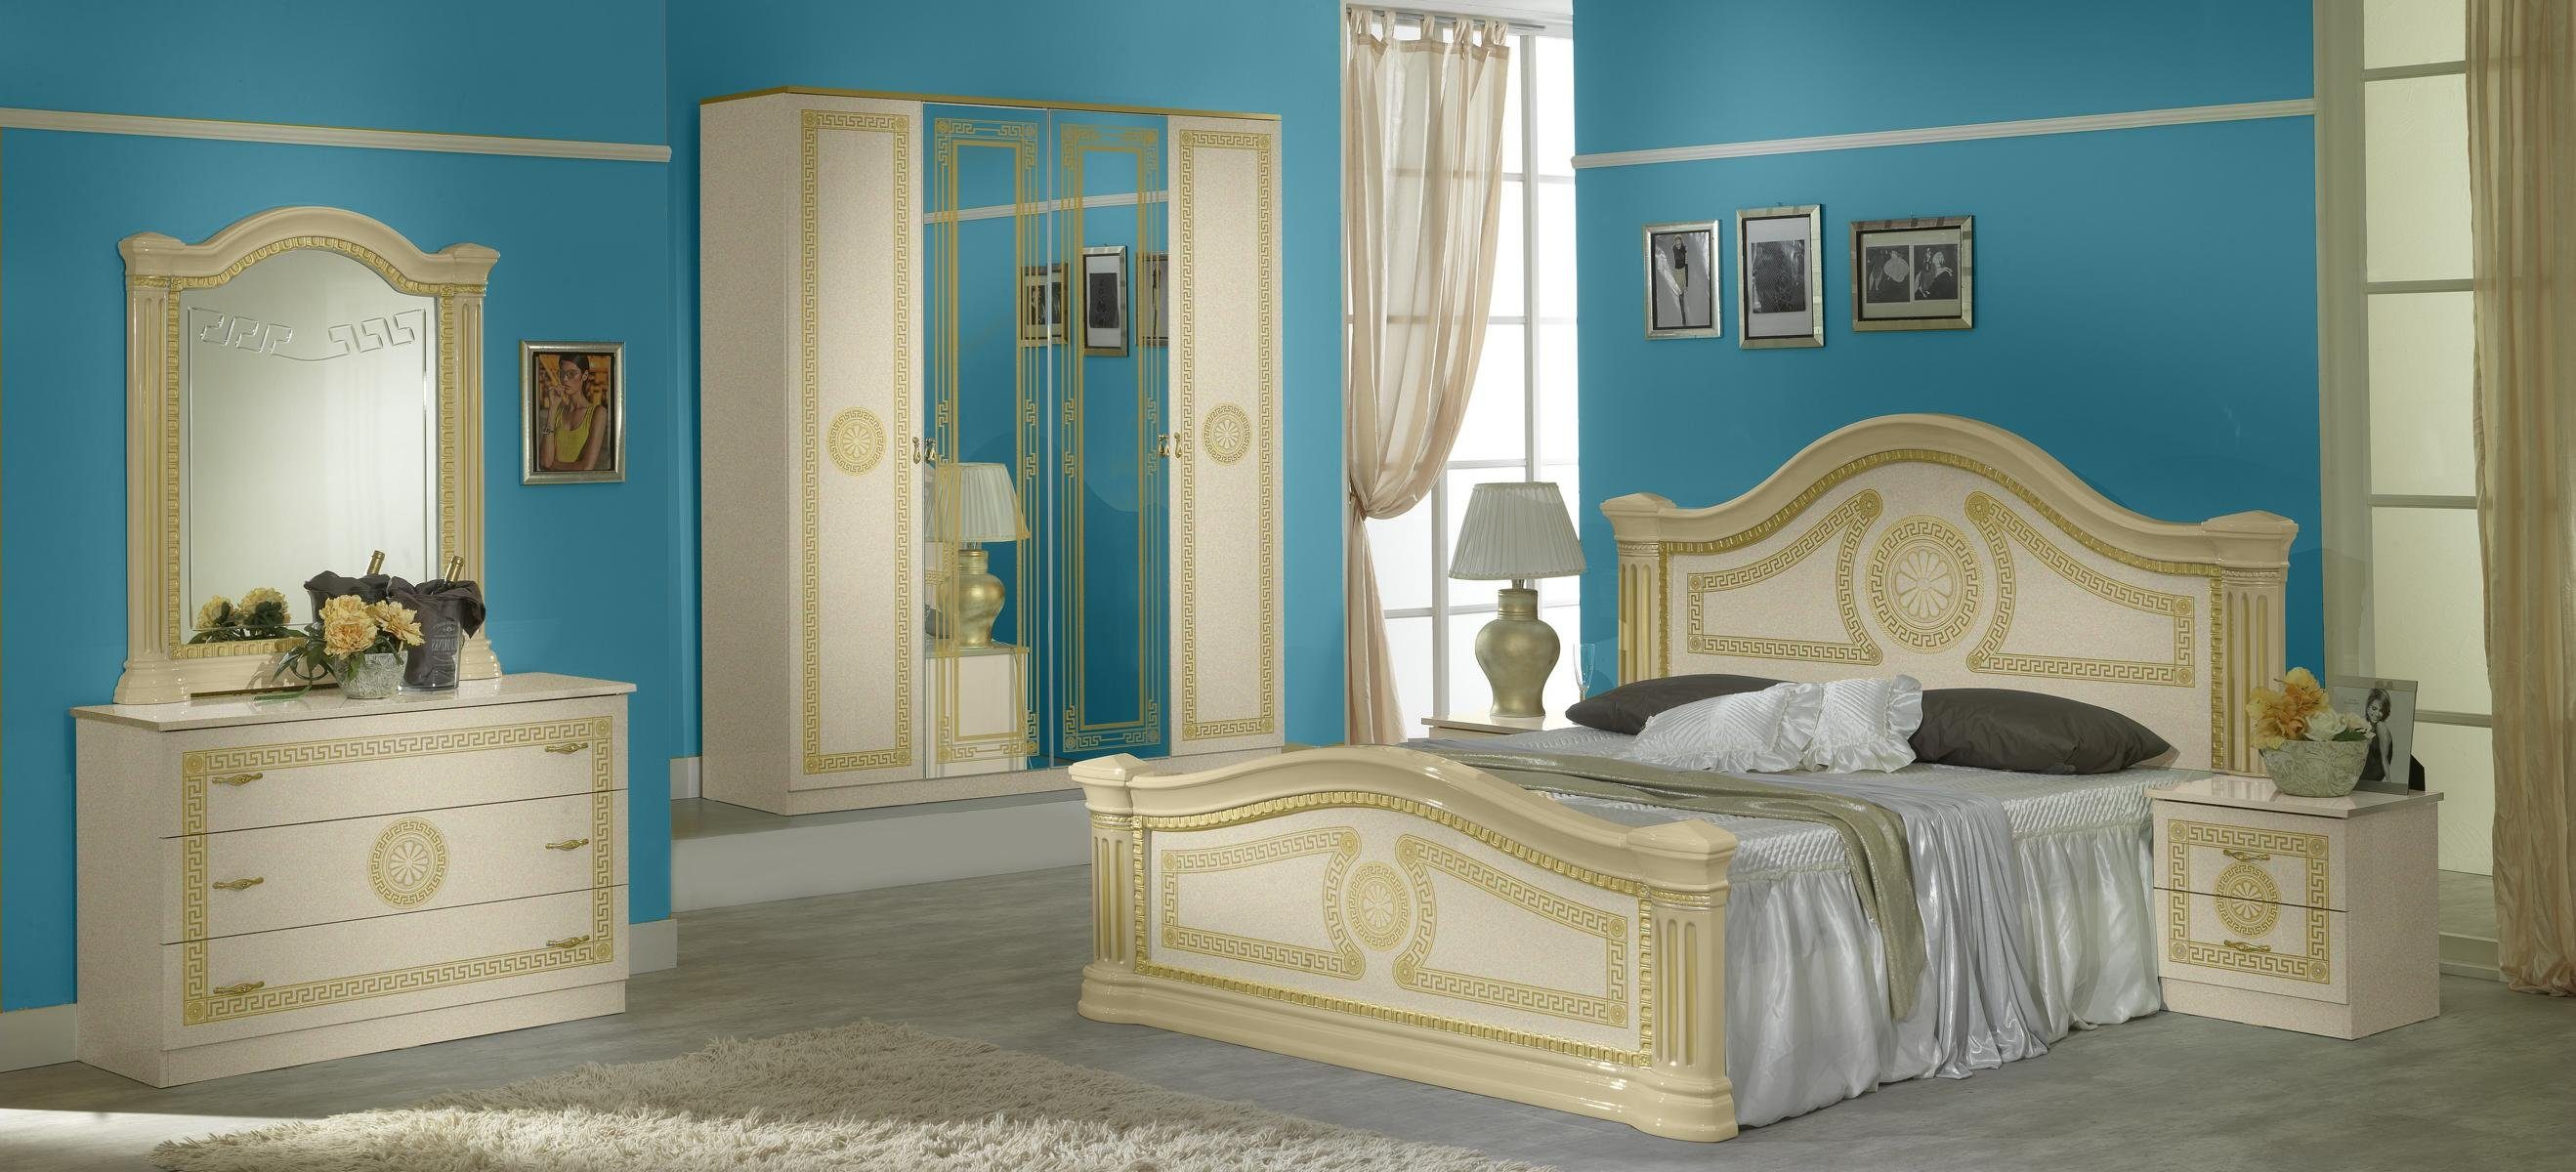 JVmoebel 6tlg Luxus Schlafzimmer Design Holz Bett Nachttisch Schlafzimmer-Set Klassisches